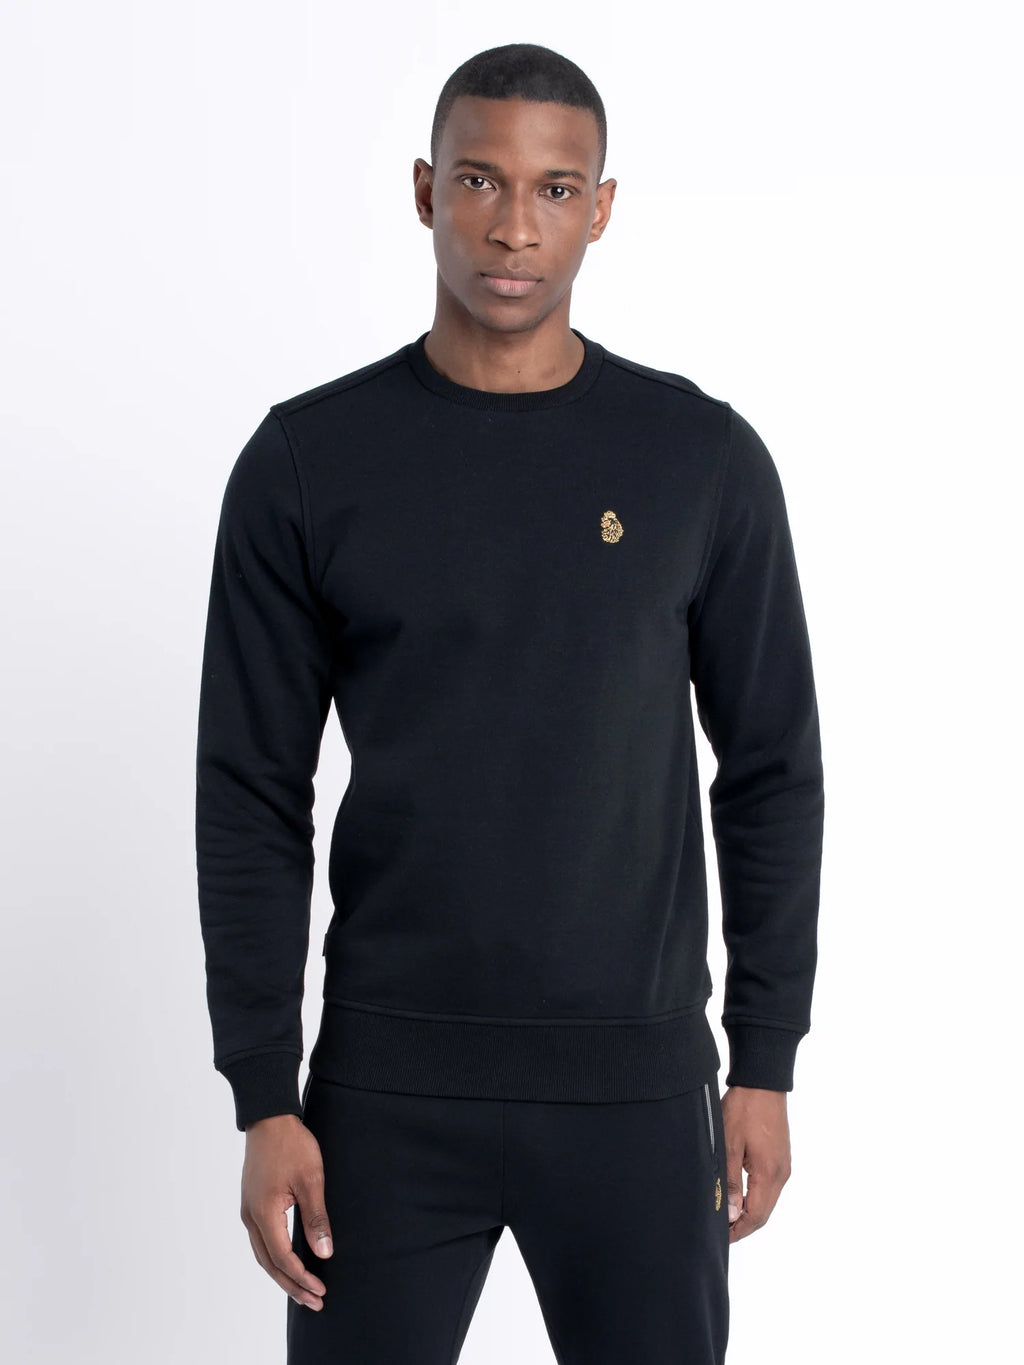 Luke Sport London Sweater Black - Raw Menswear